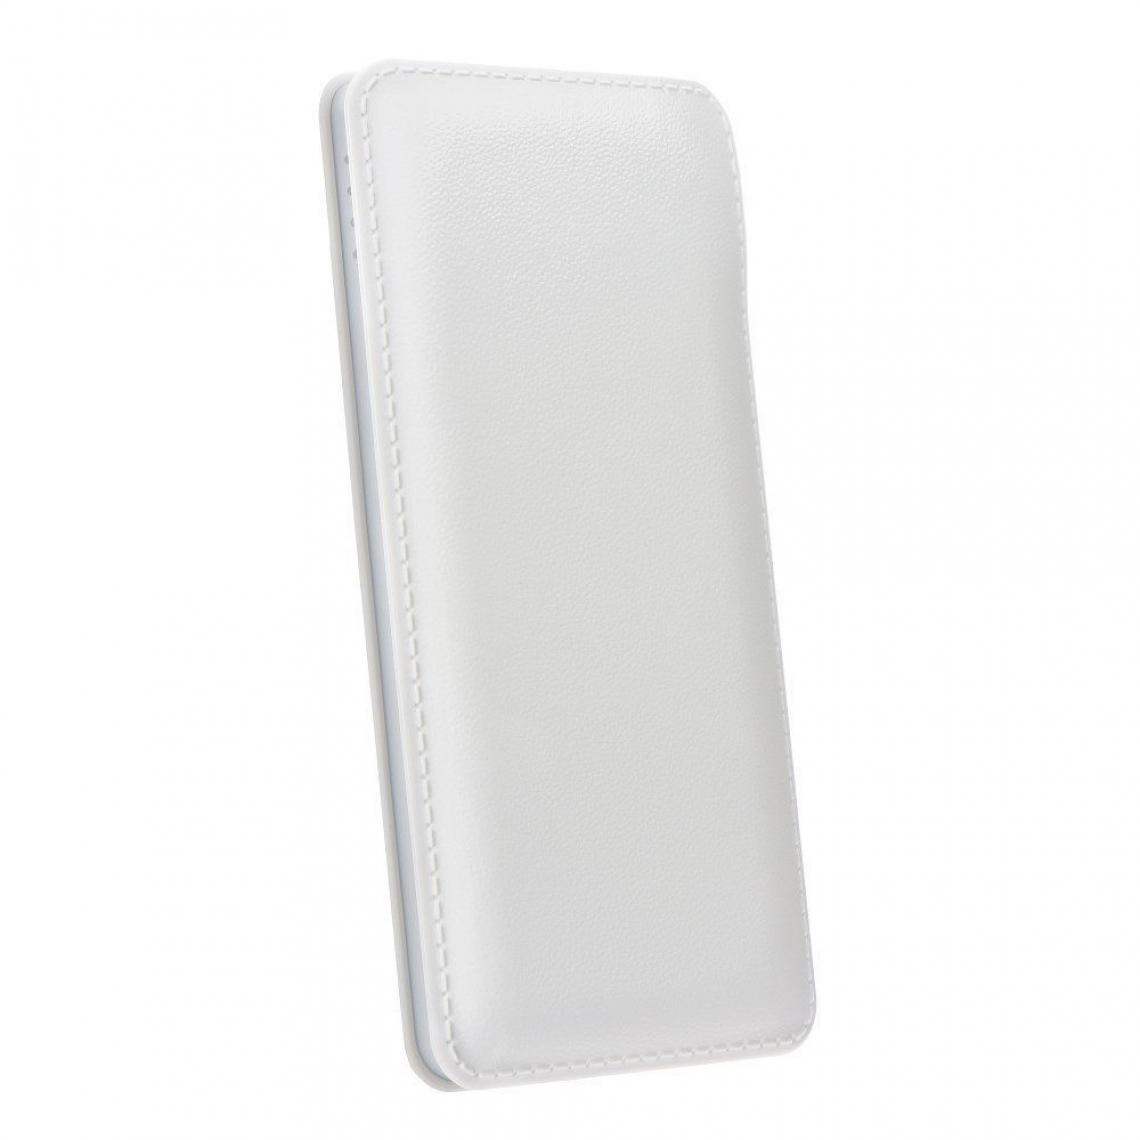 Ozzzo - Chargeur batterie externe 20000 mAh powerbank ozzzo blanc pour Samsung Galaxy S10 Lite - Autres accessoires smartphone